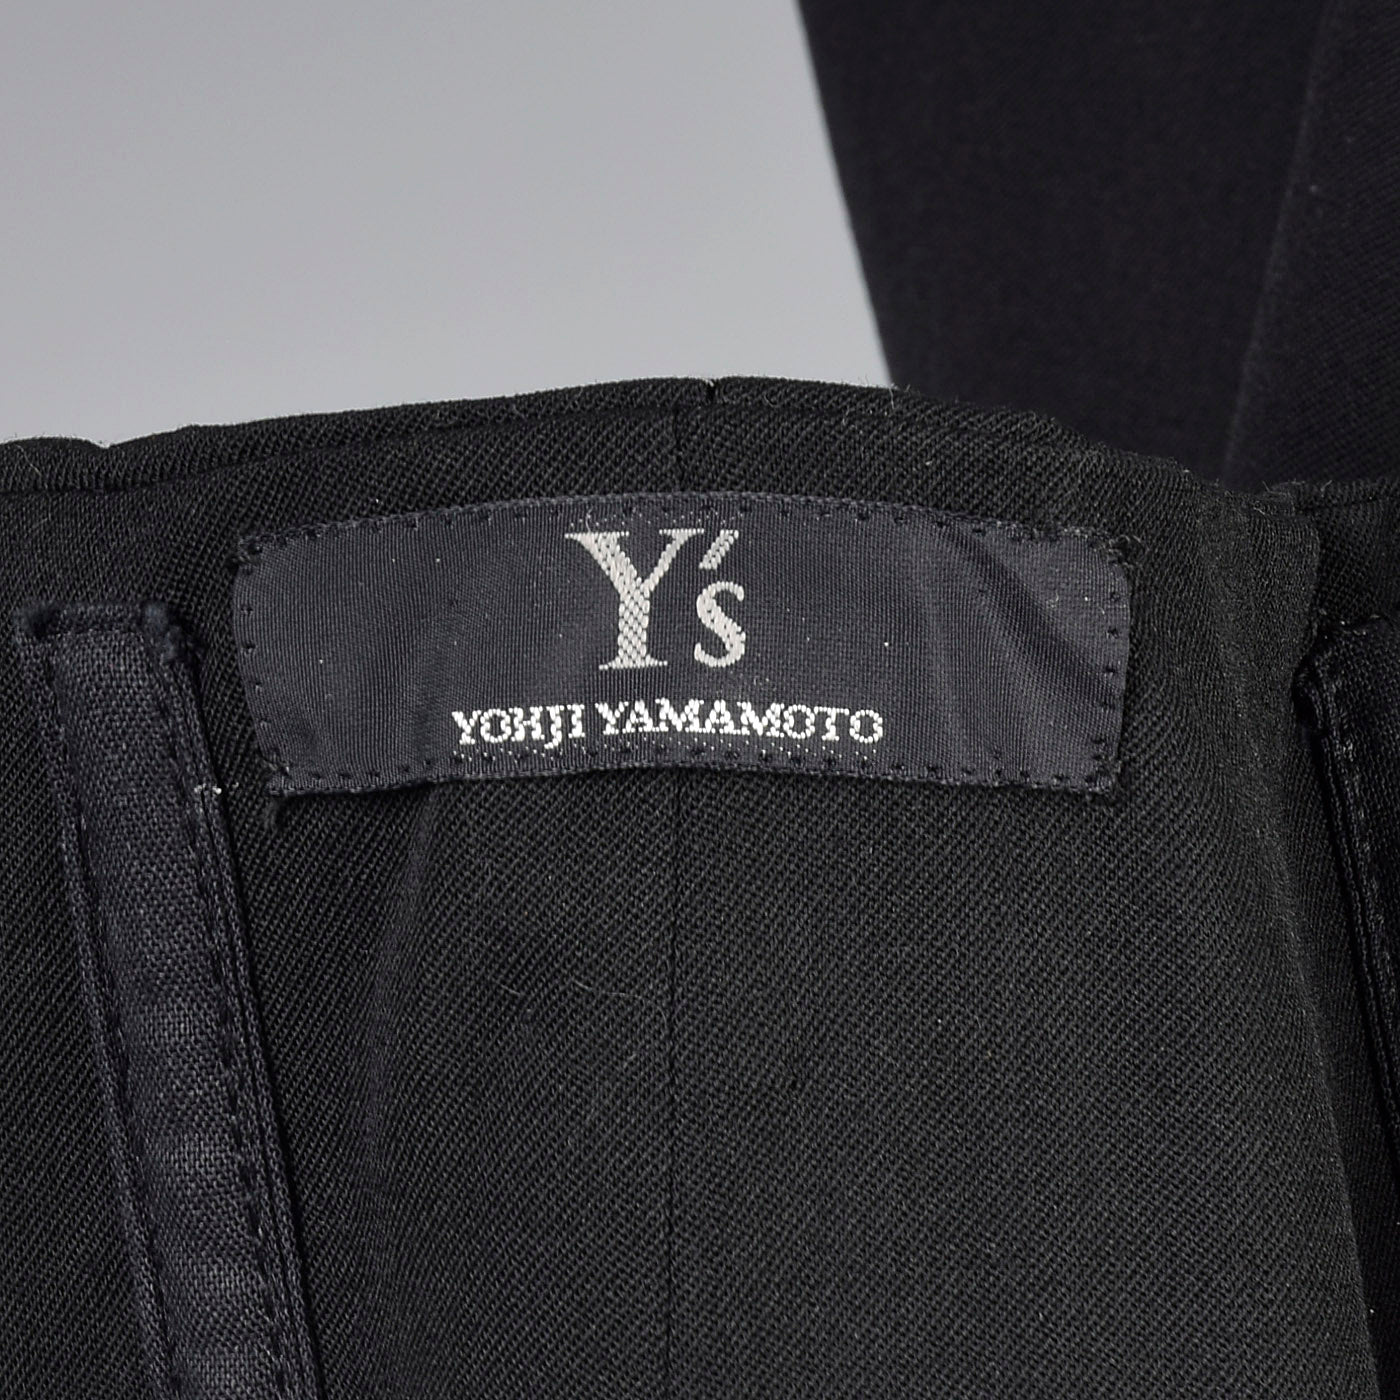 2010s Yohji Yamamoto Black Full Circle Skirt with High Waist